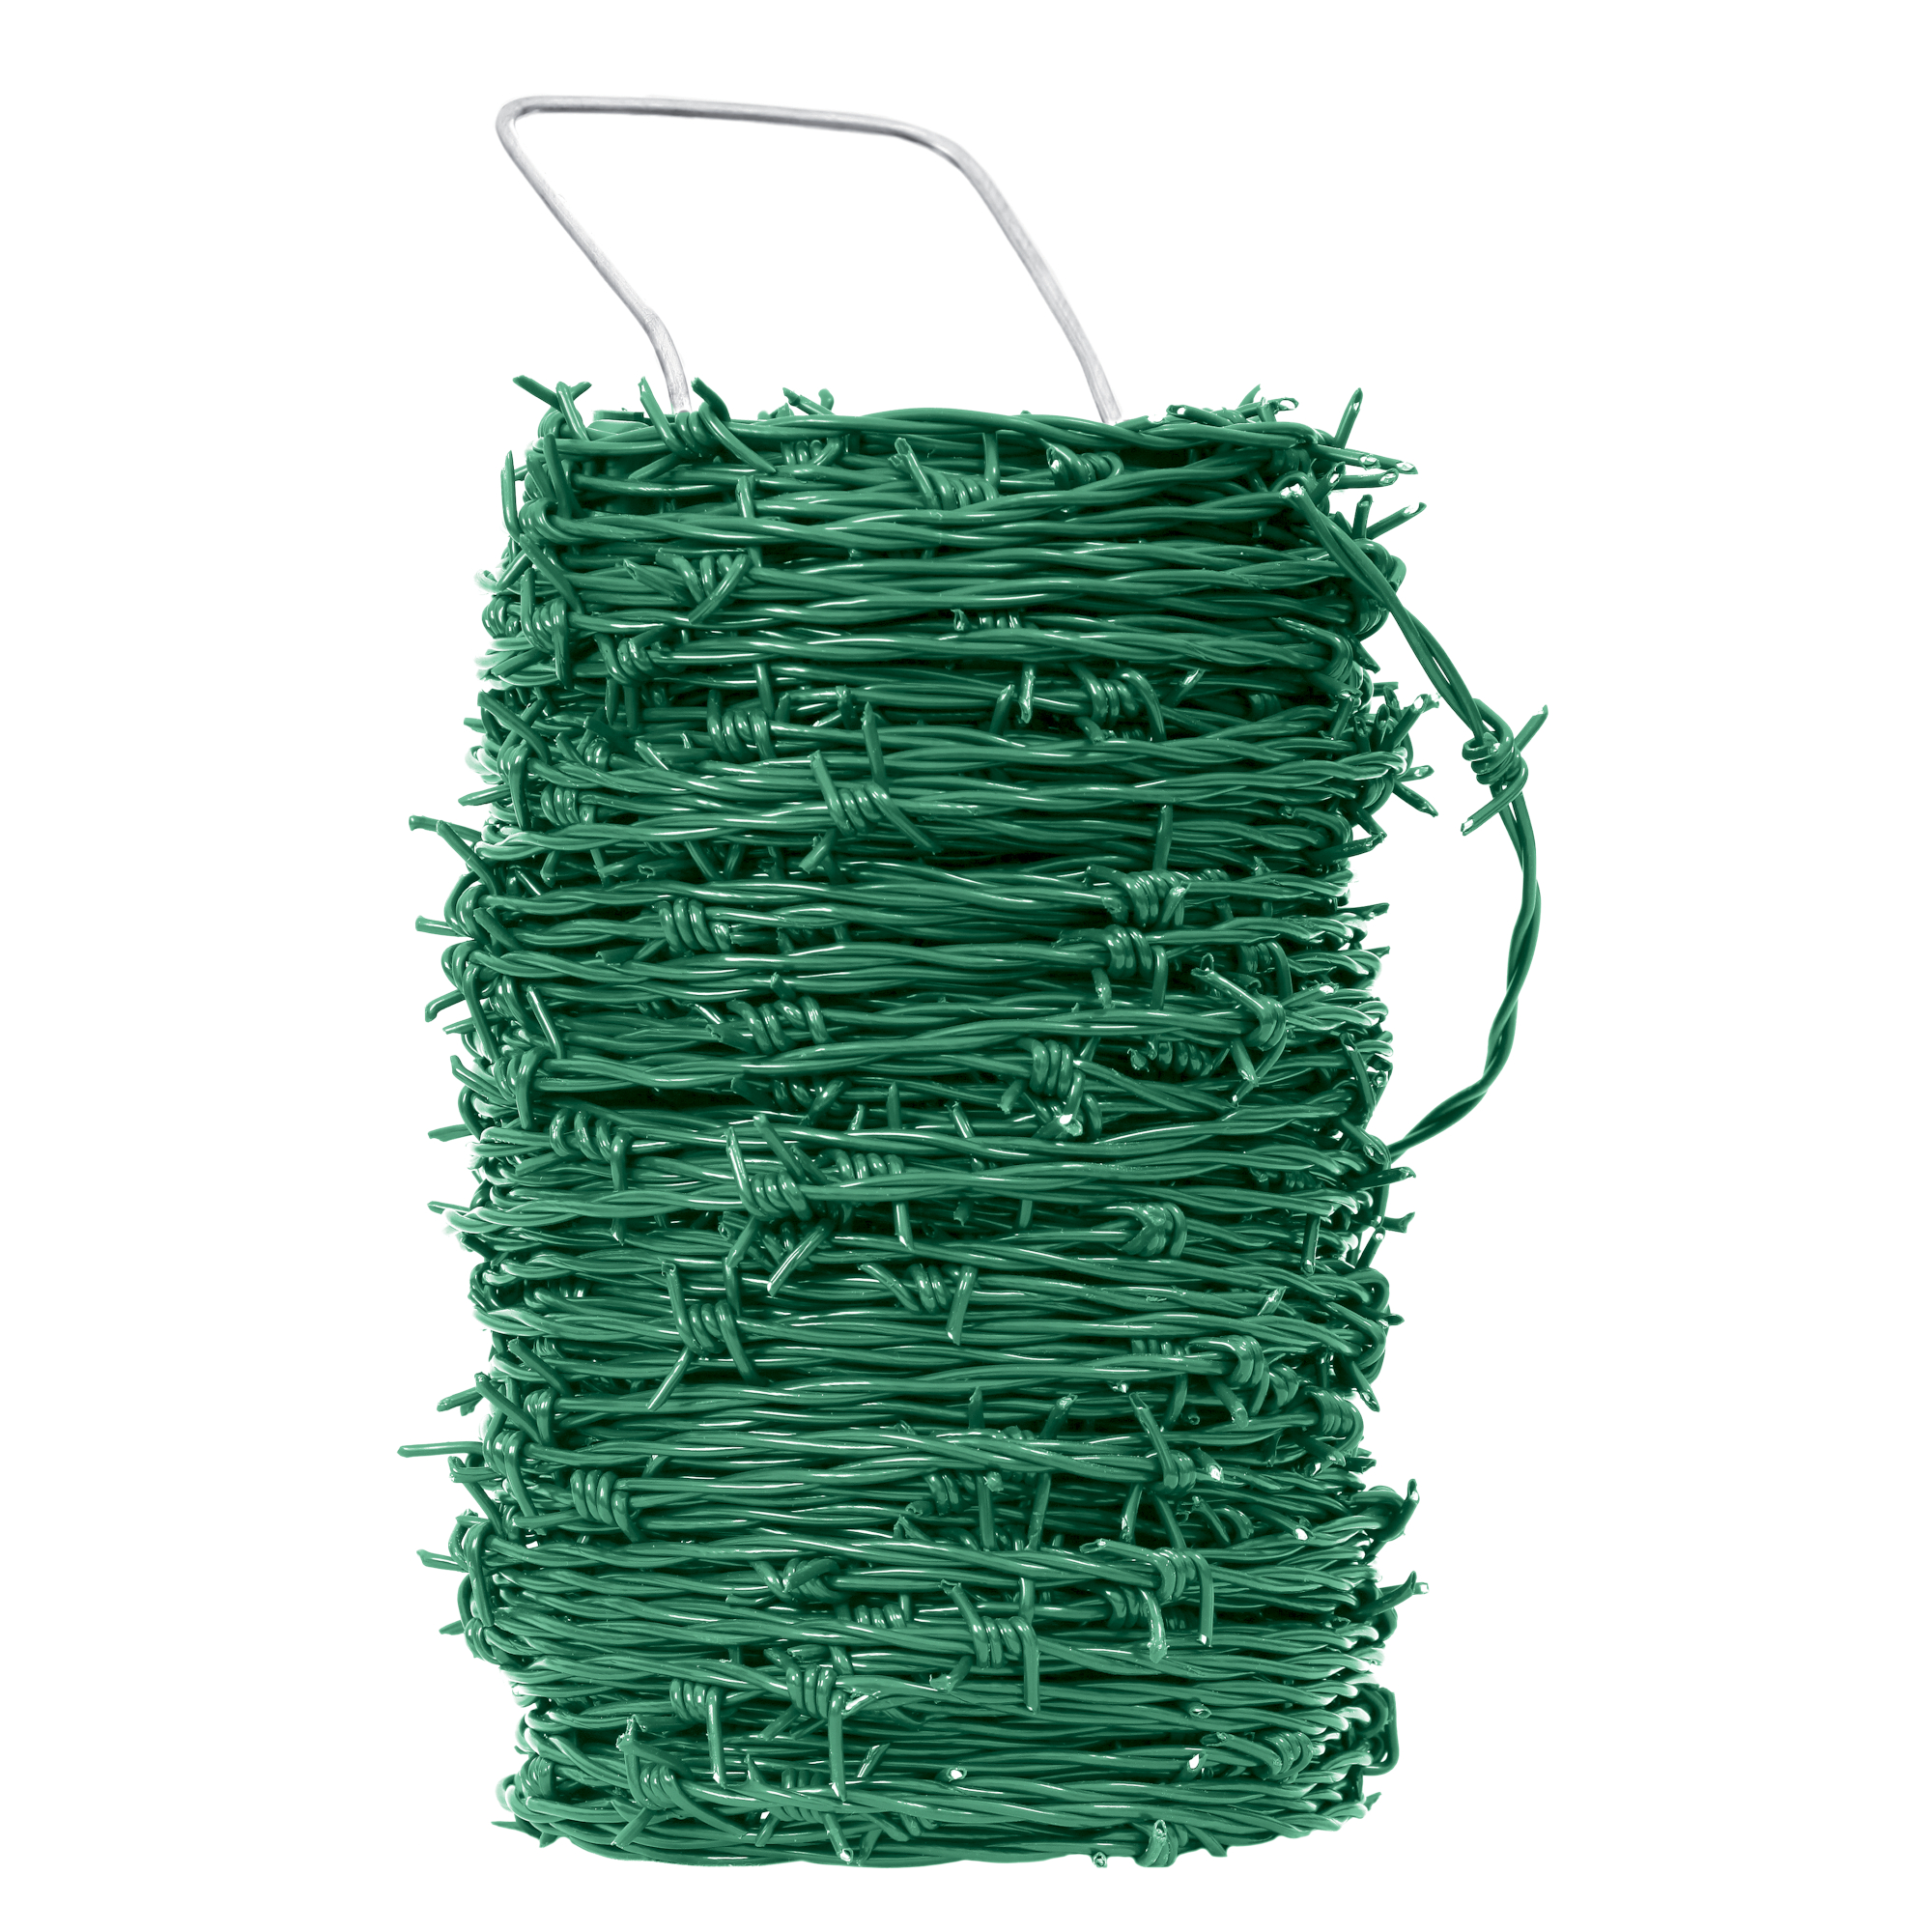 Drát ostnatý Pichláček Zn + PVC zelený 50 m Pilecký